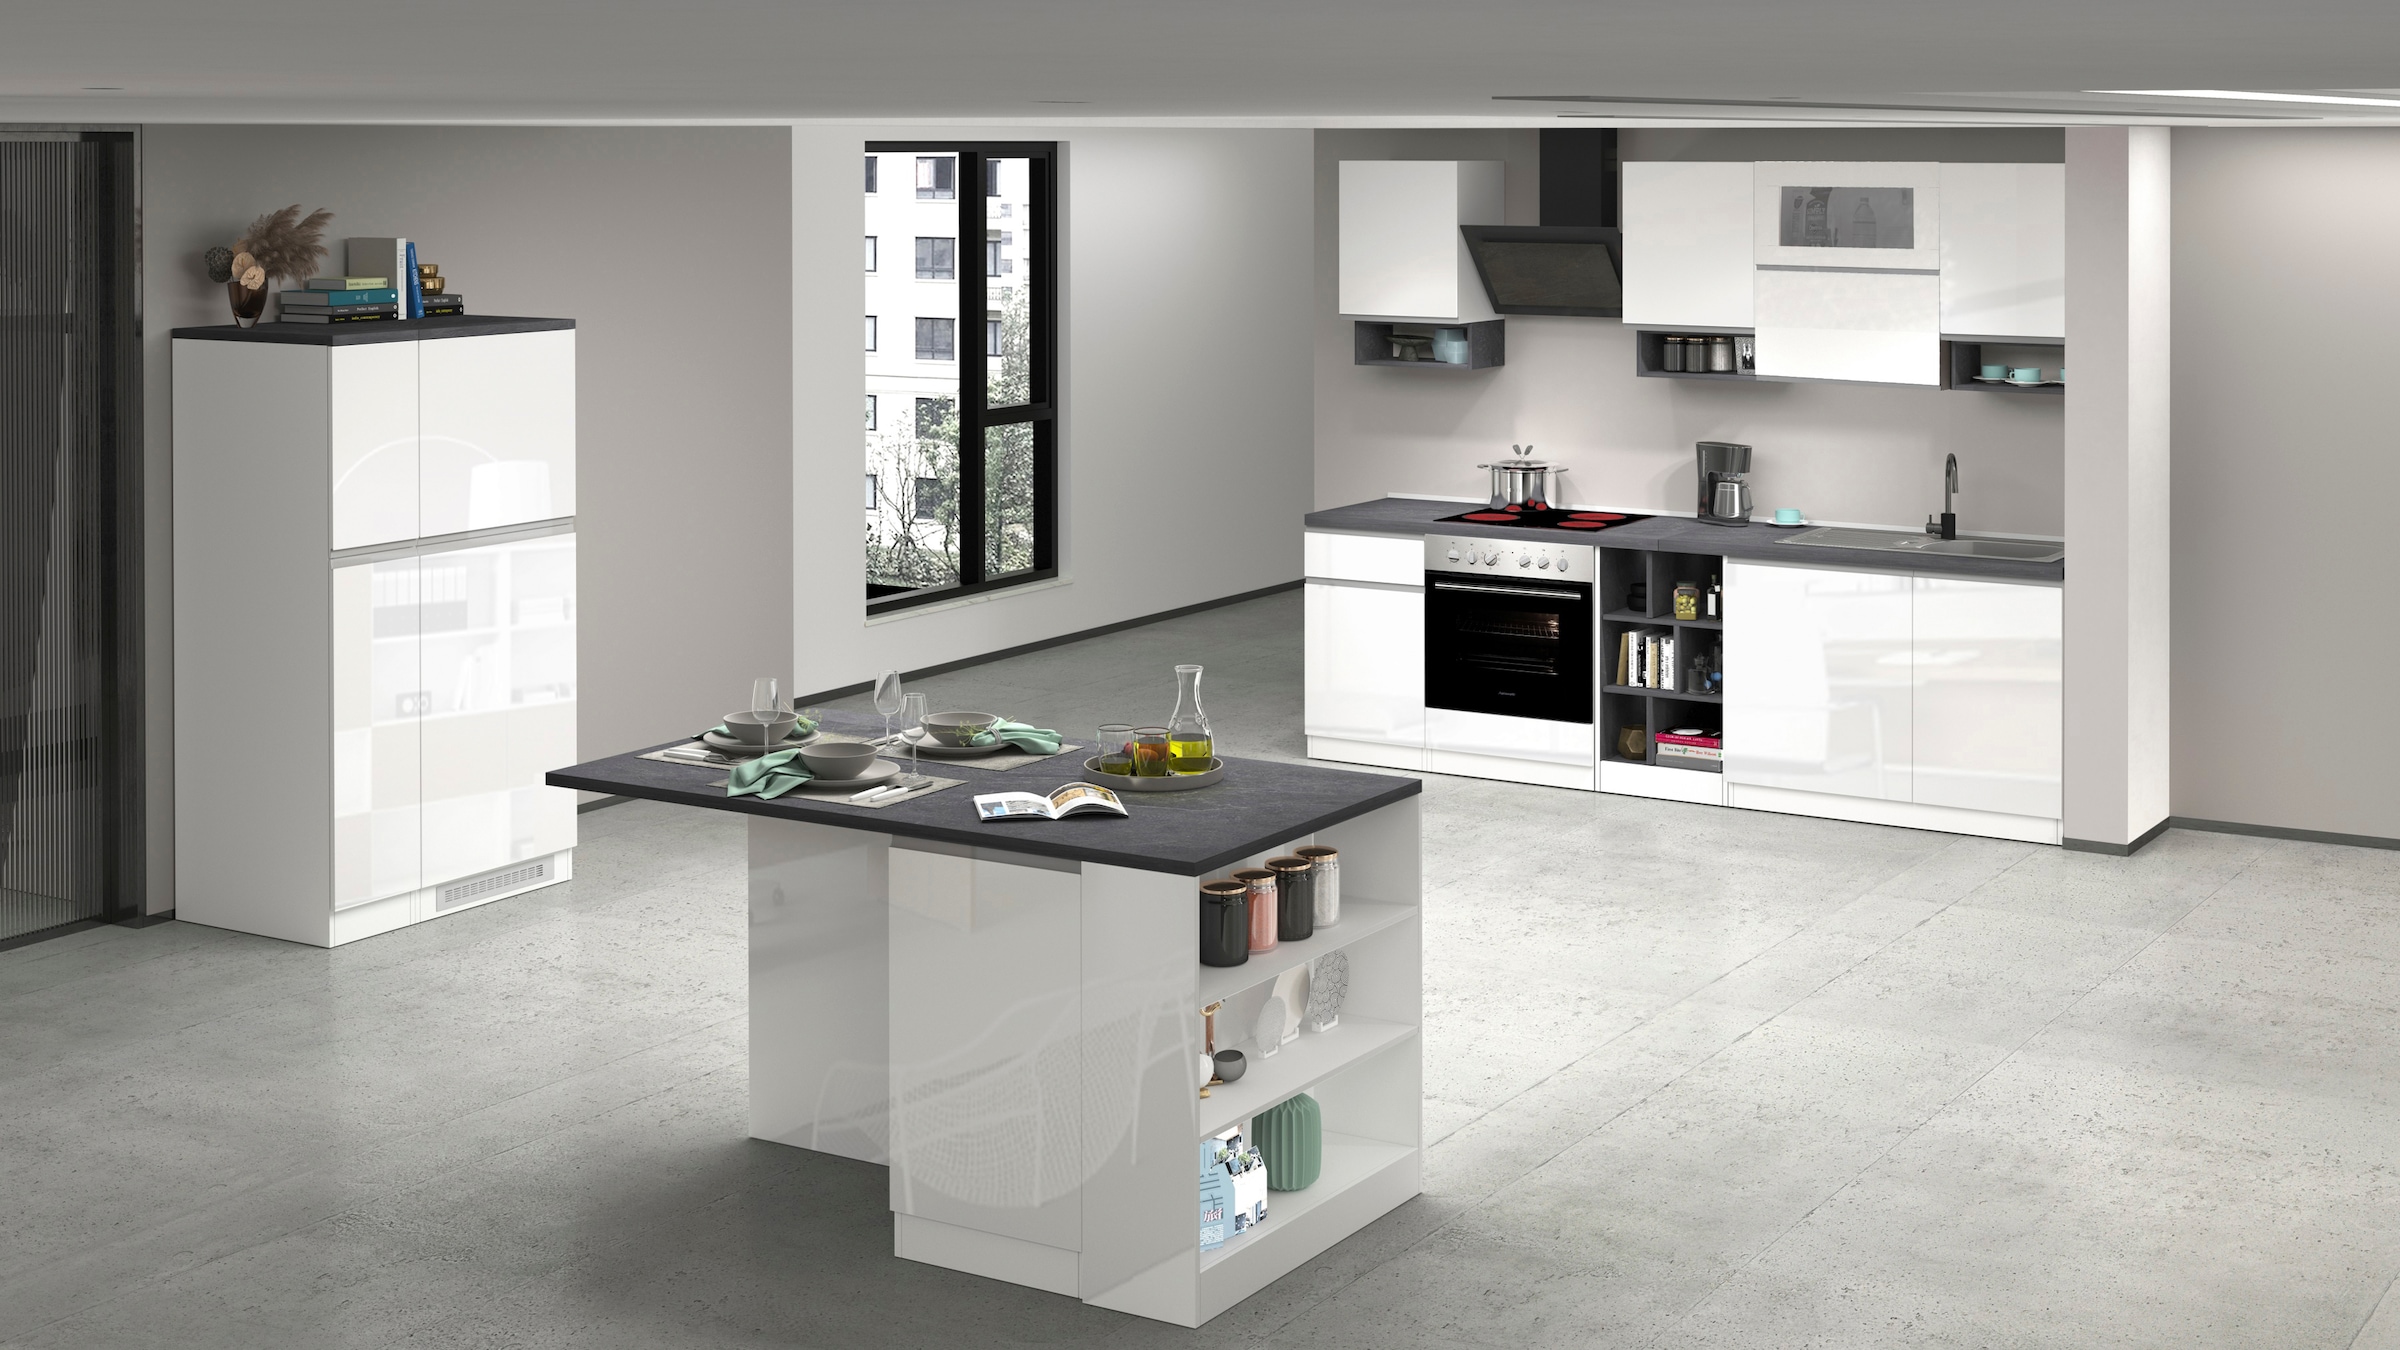 Kochstation Küchenzeile »KS-Sole«, Breite 256 cm, mit Geschirr-Abtropfschrank, ohne E-Geräte